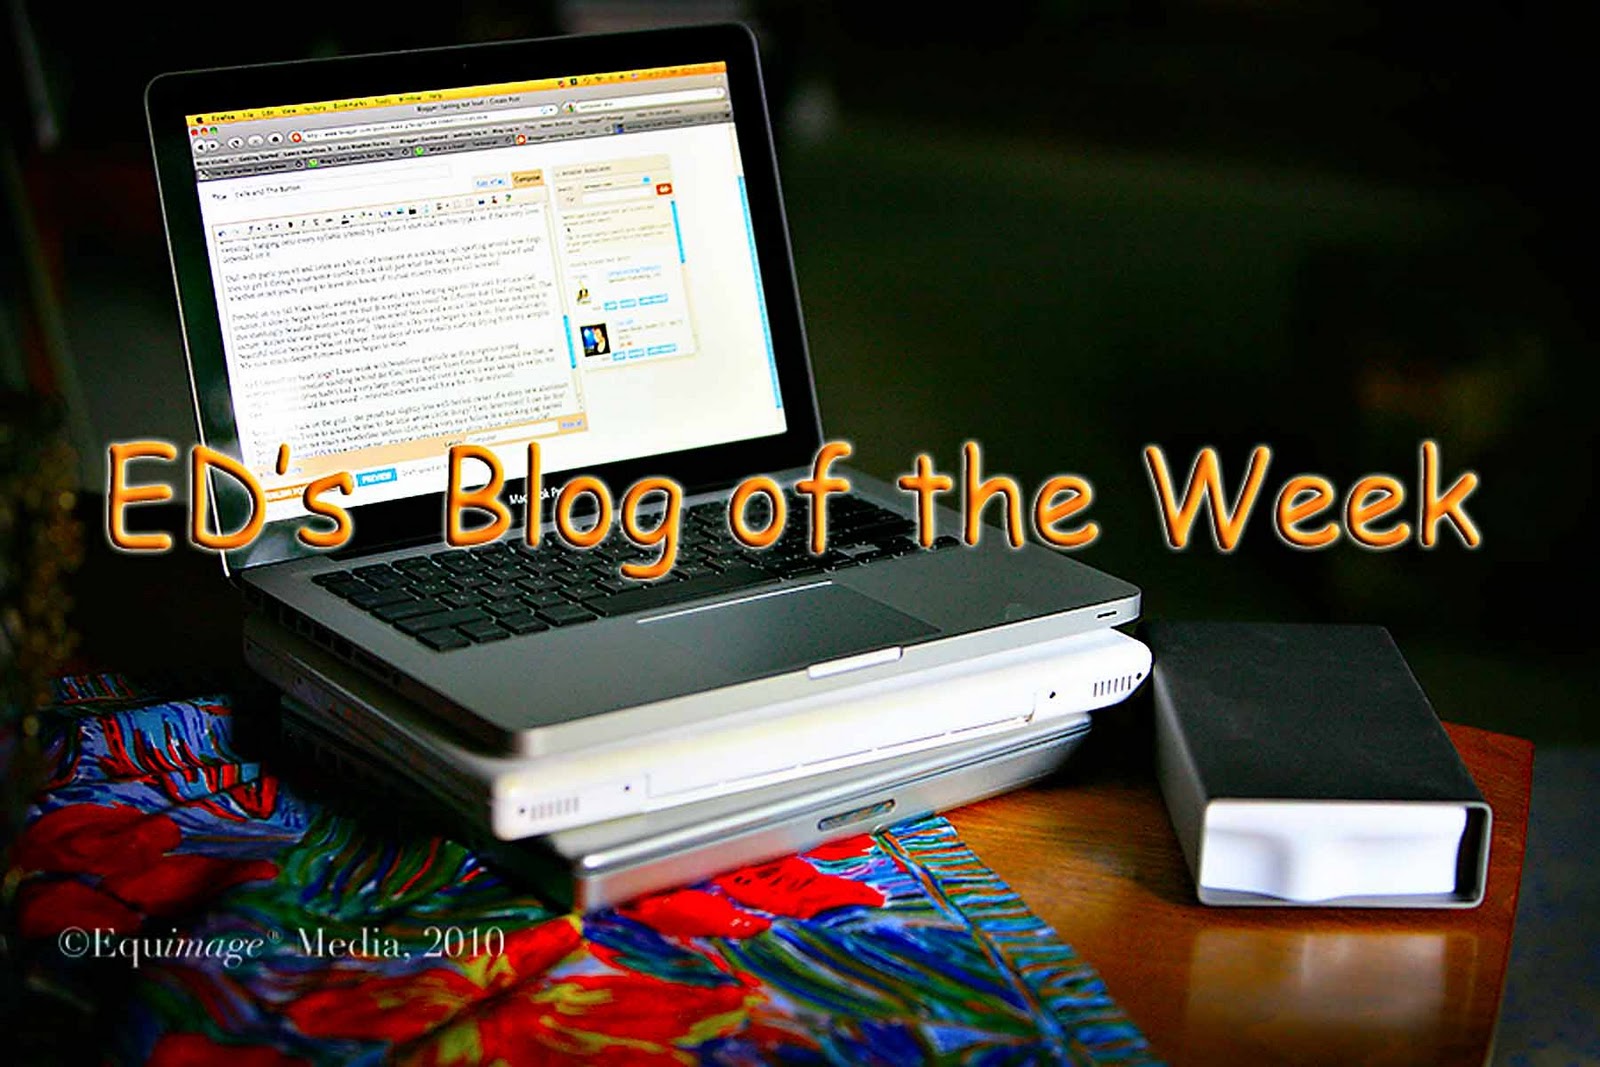 http://4.bp.blogspot.com/_s0XckXa2zWg/TU_u1R0bTbI/AAAAAAAACWU/u6GHgJnm0iU/s1600/_MG_8130-blog-of-the-week4x.jpg